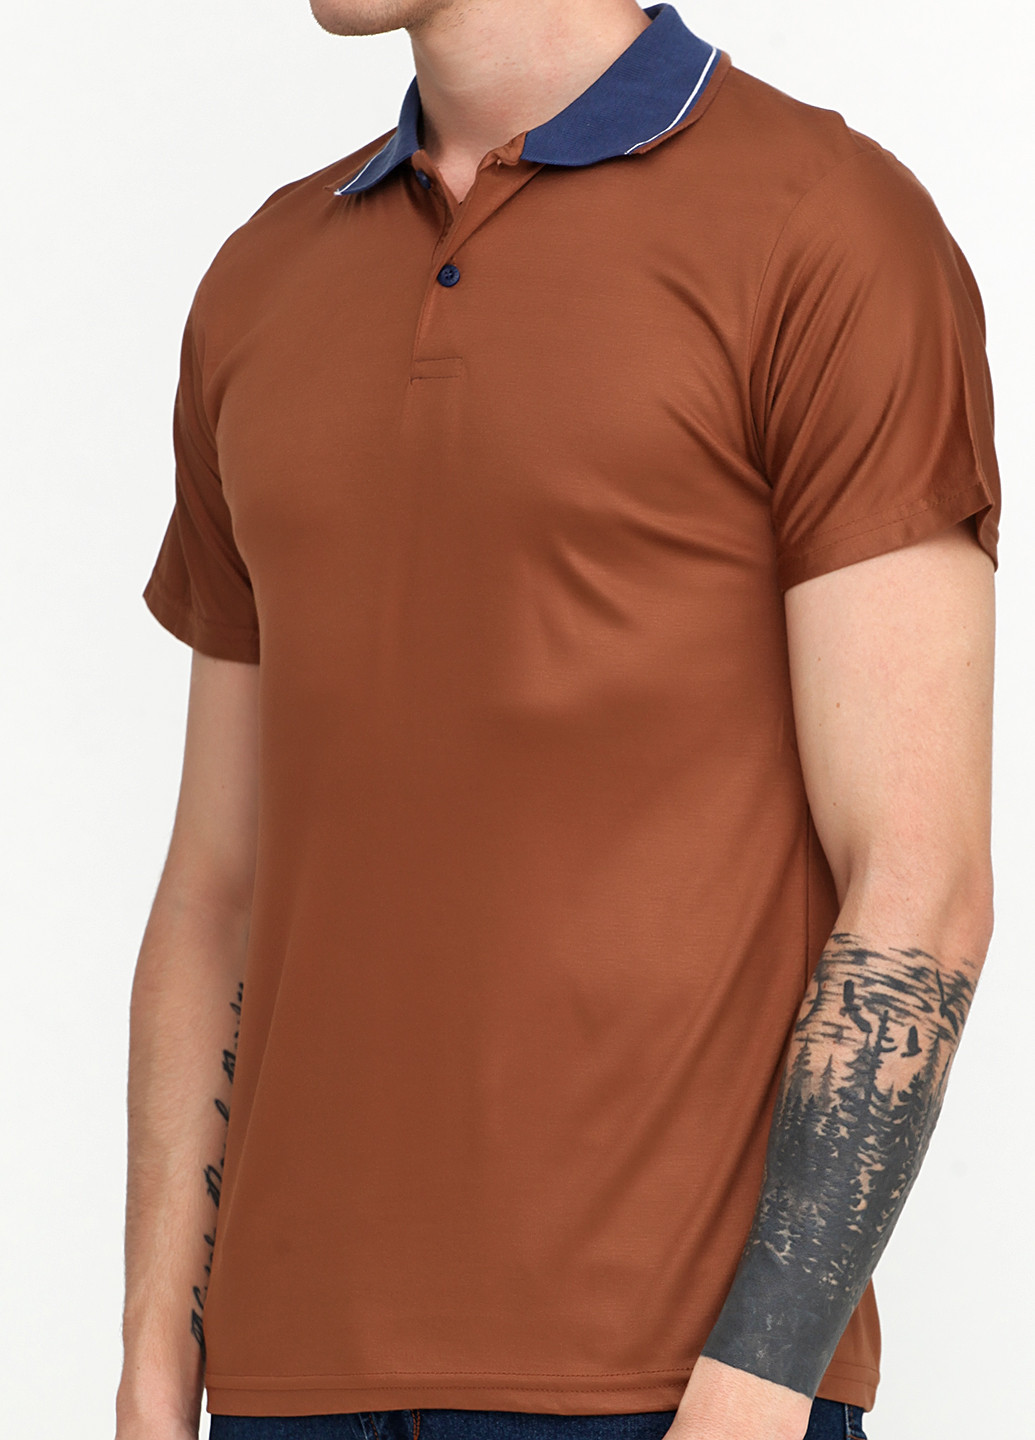 Коричневая футболка-поло для мужчин Clartex однотонная